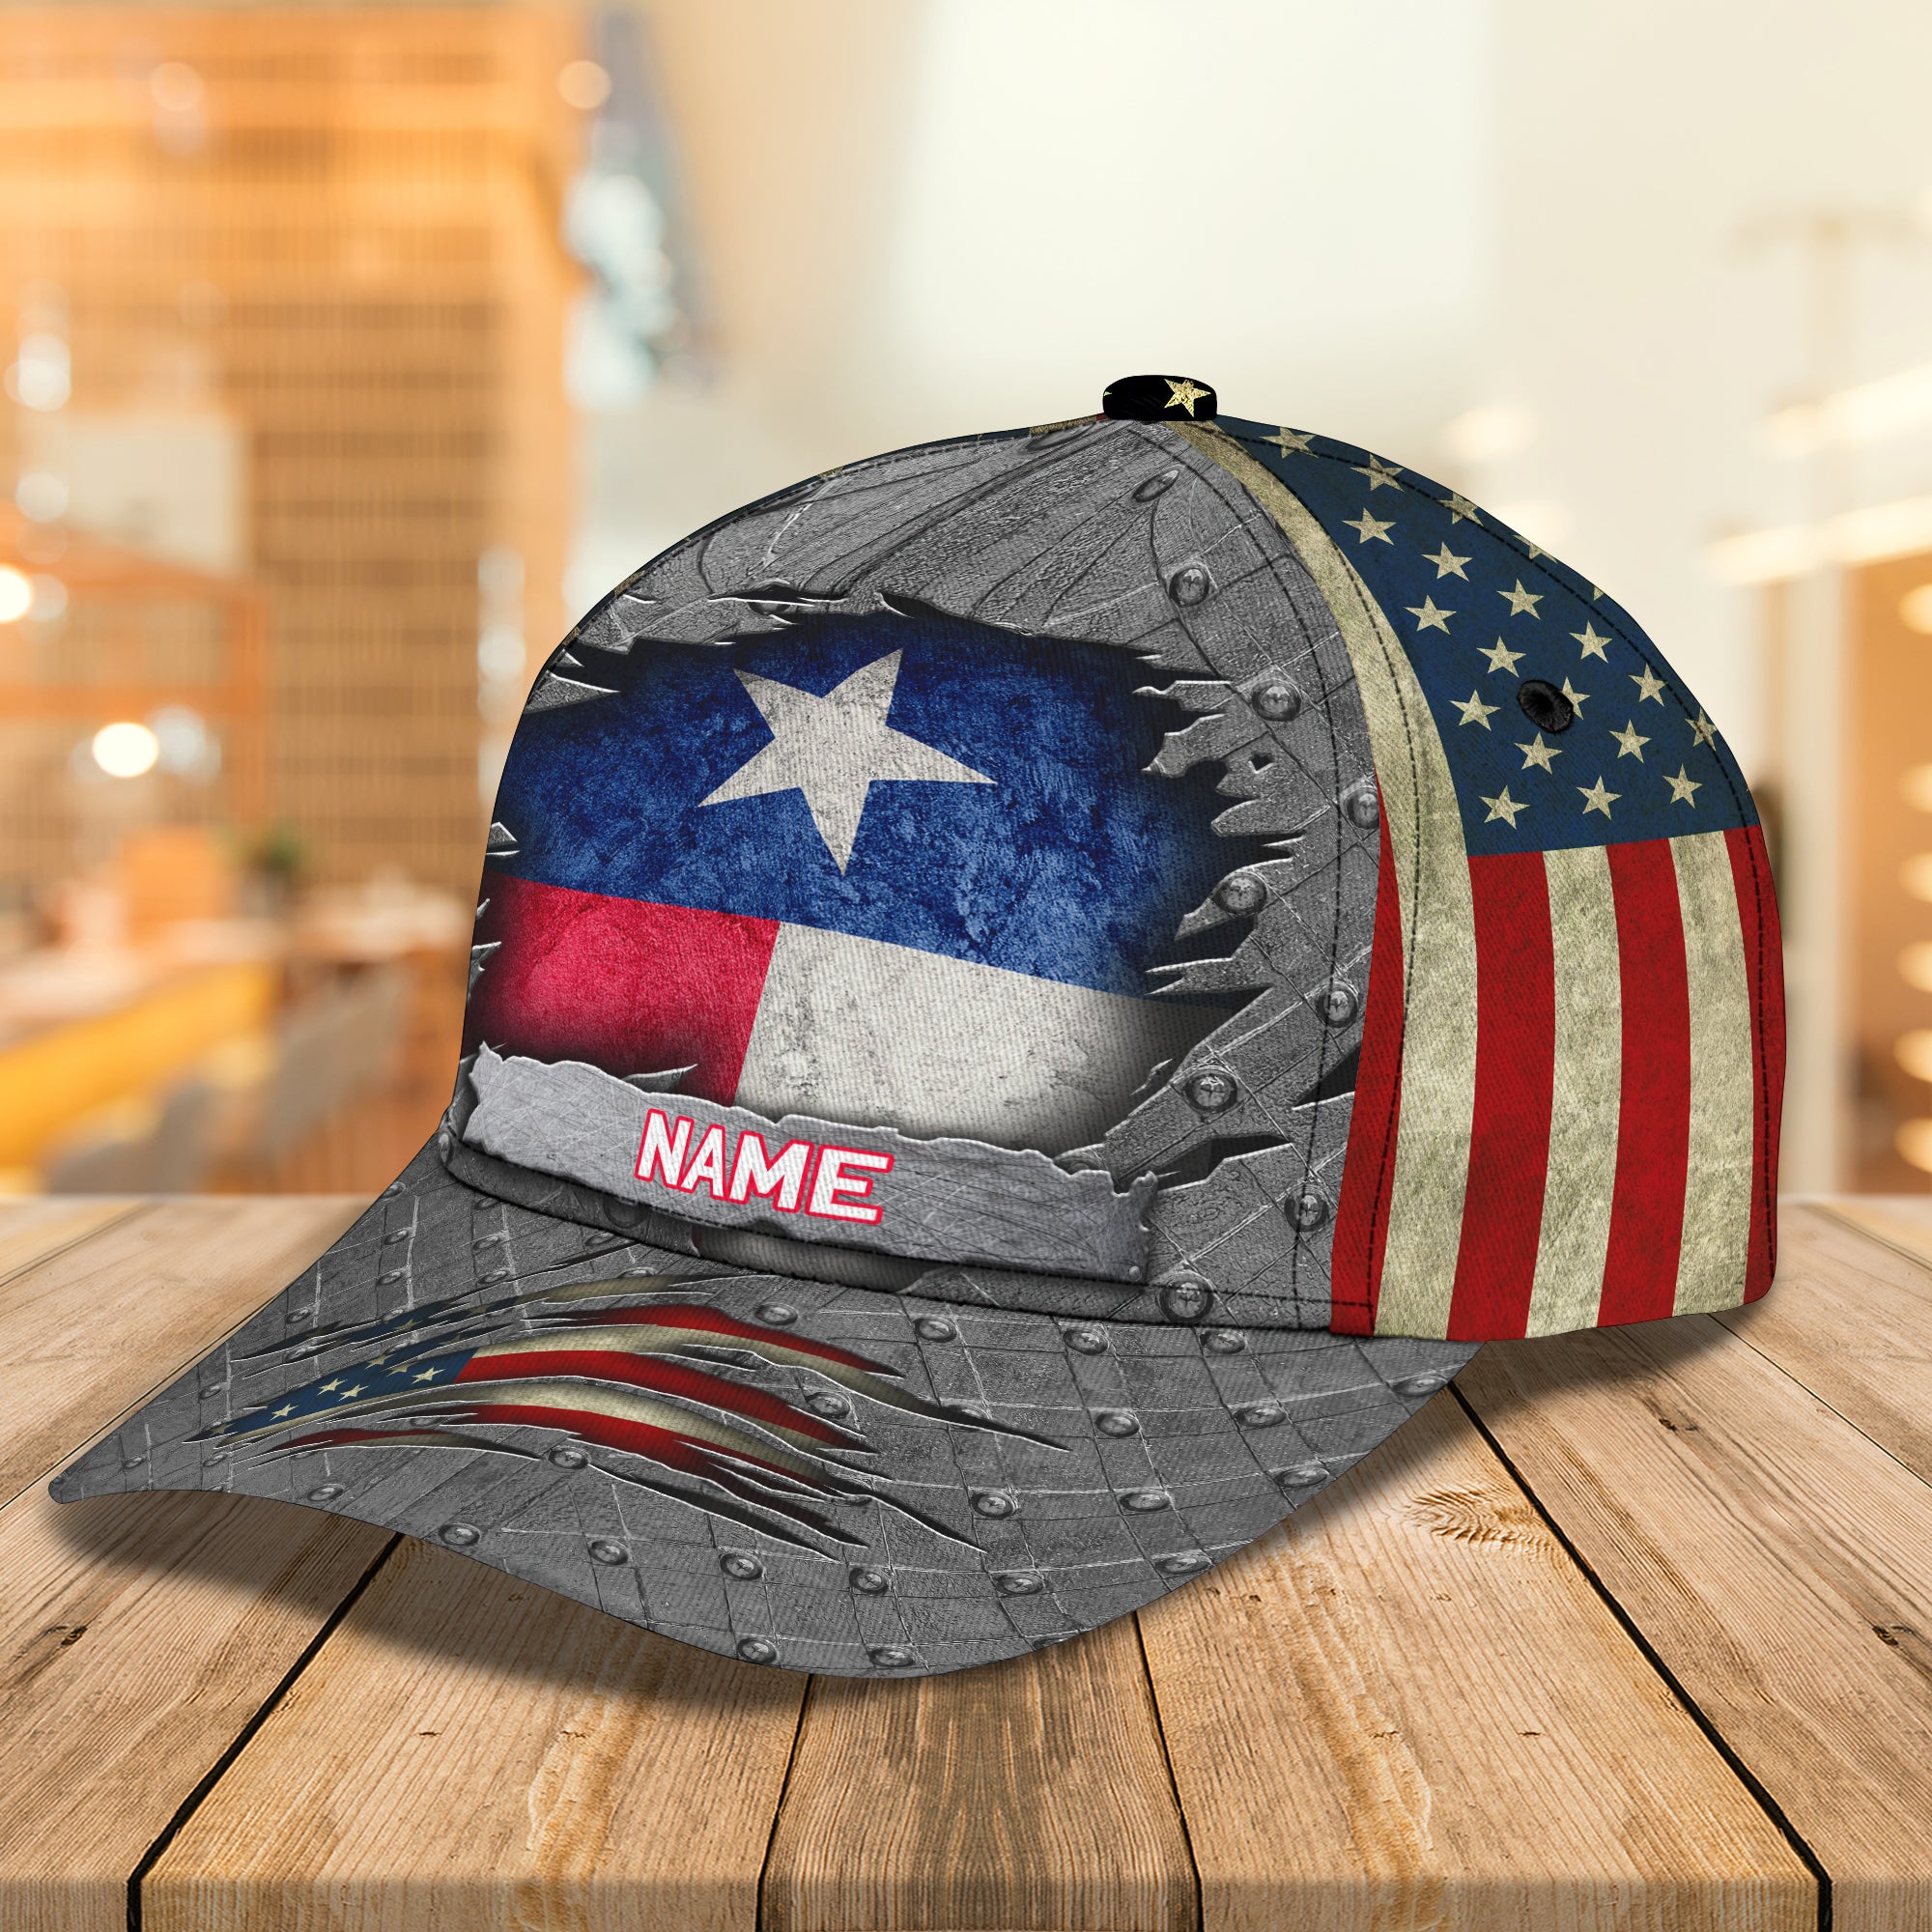 Texas Personalized Name Cap - Dah